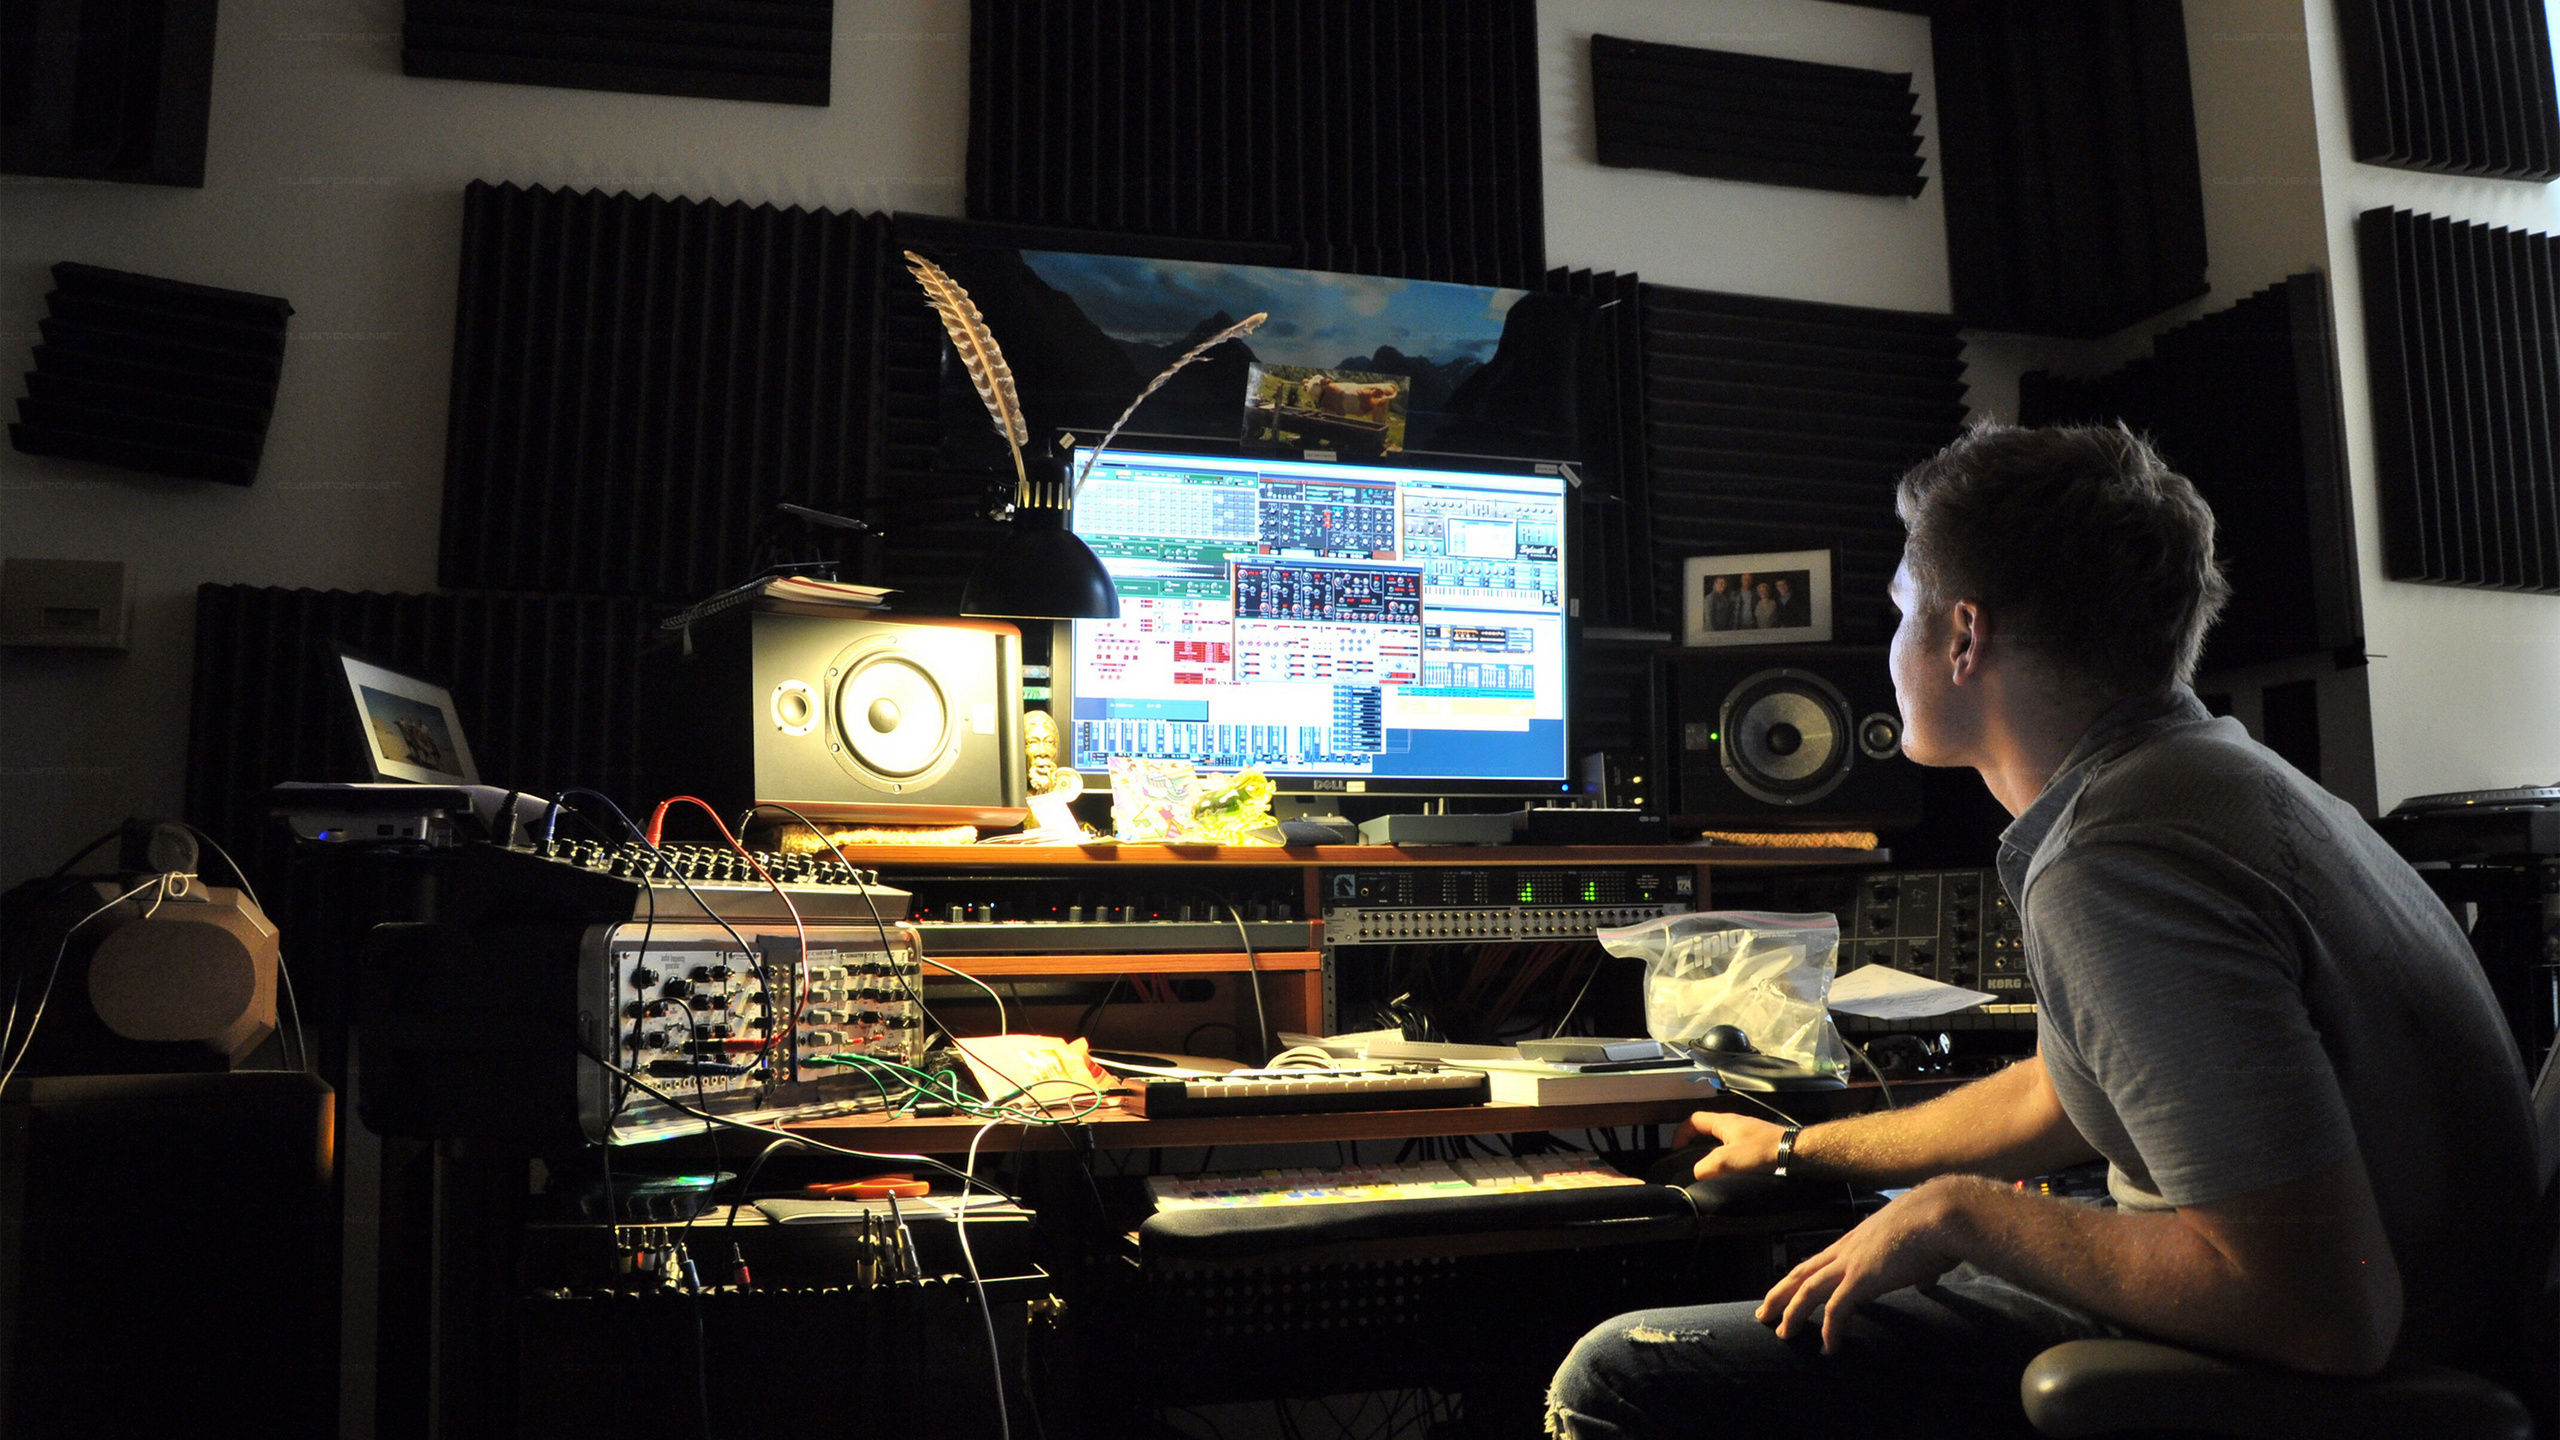 Making games studio. Студия звукозаписи FL Studio. Звукорежиссер на студии. Музыканты в студии звукозаписи. Музыкант в студии.